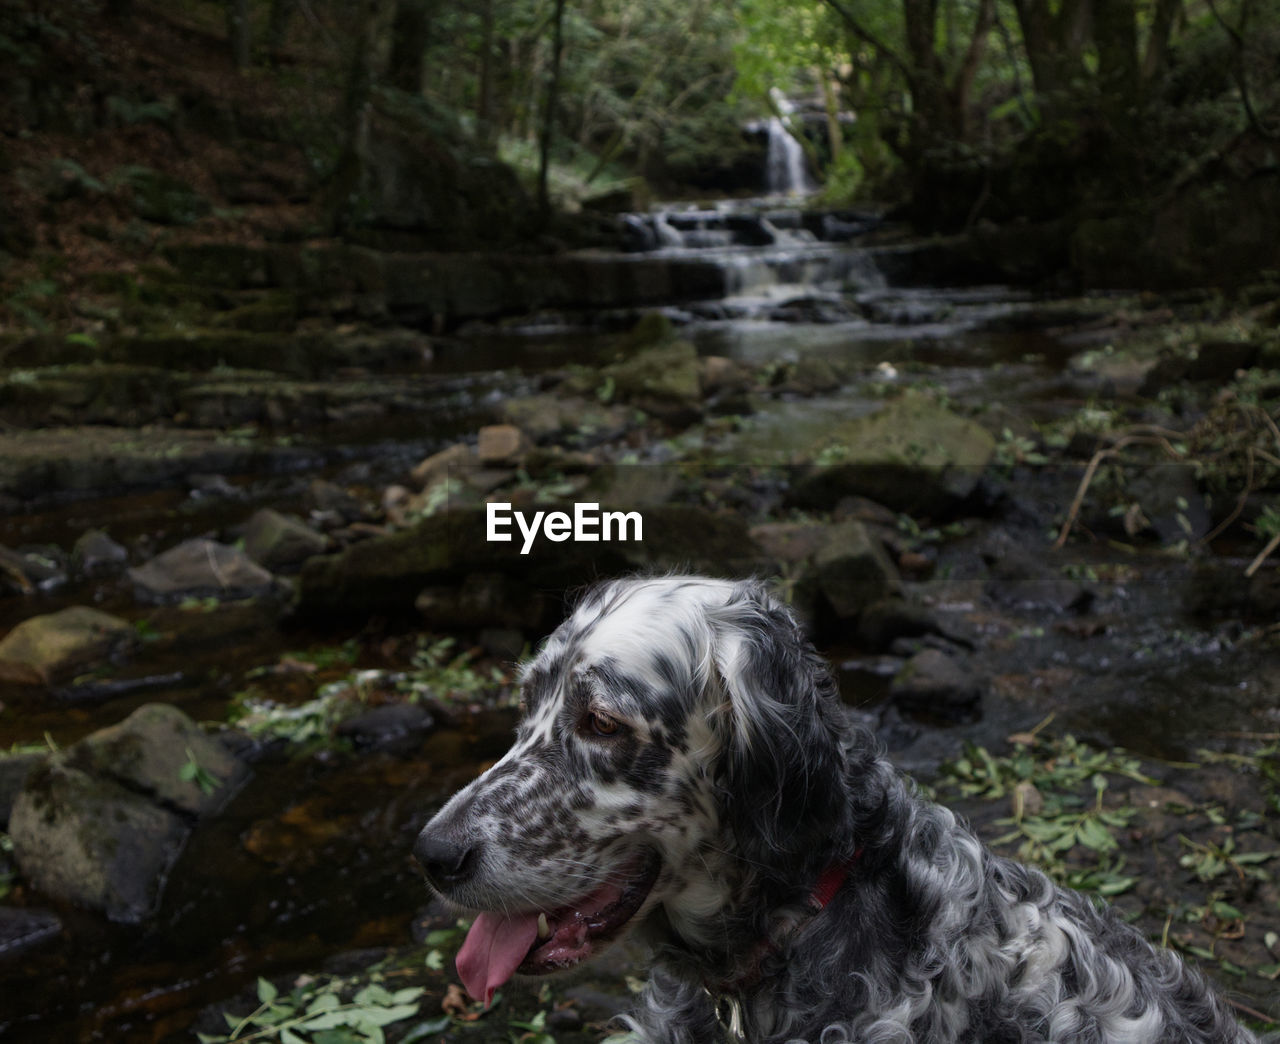 Dog looking at waterfall